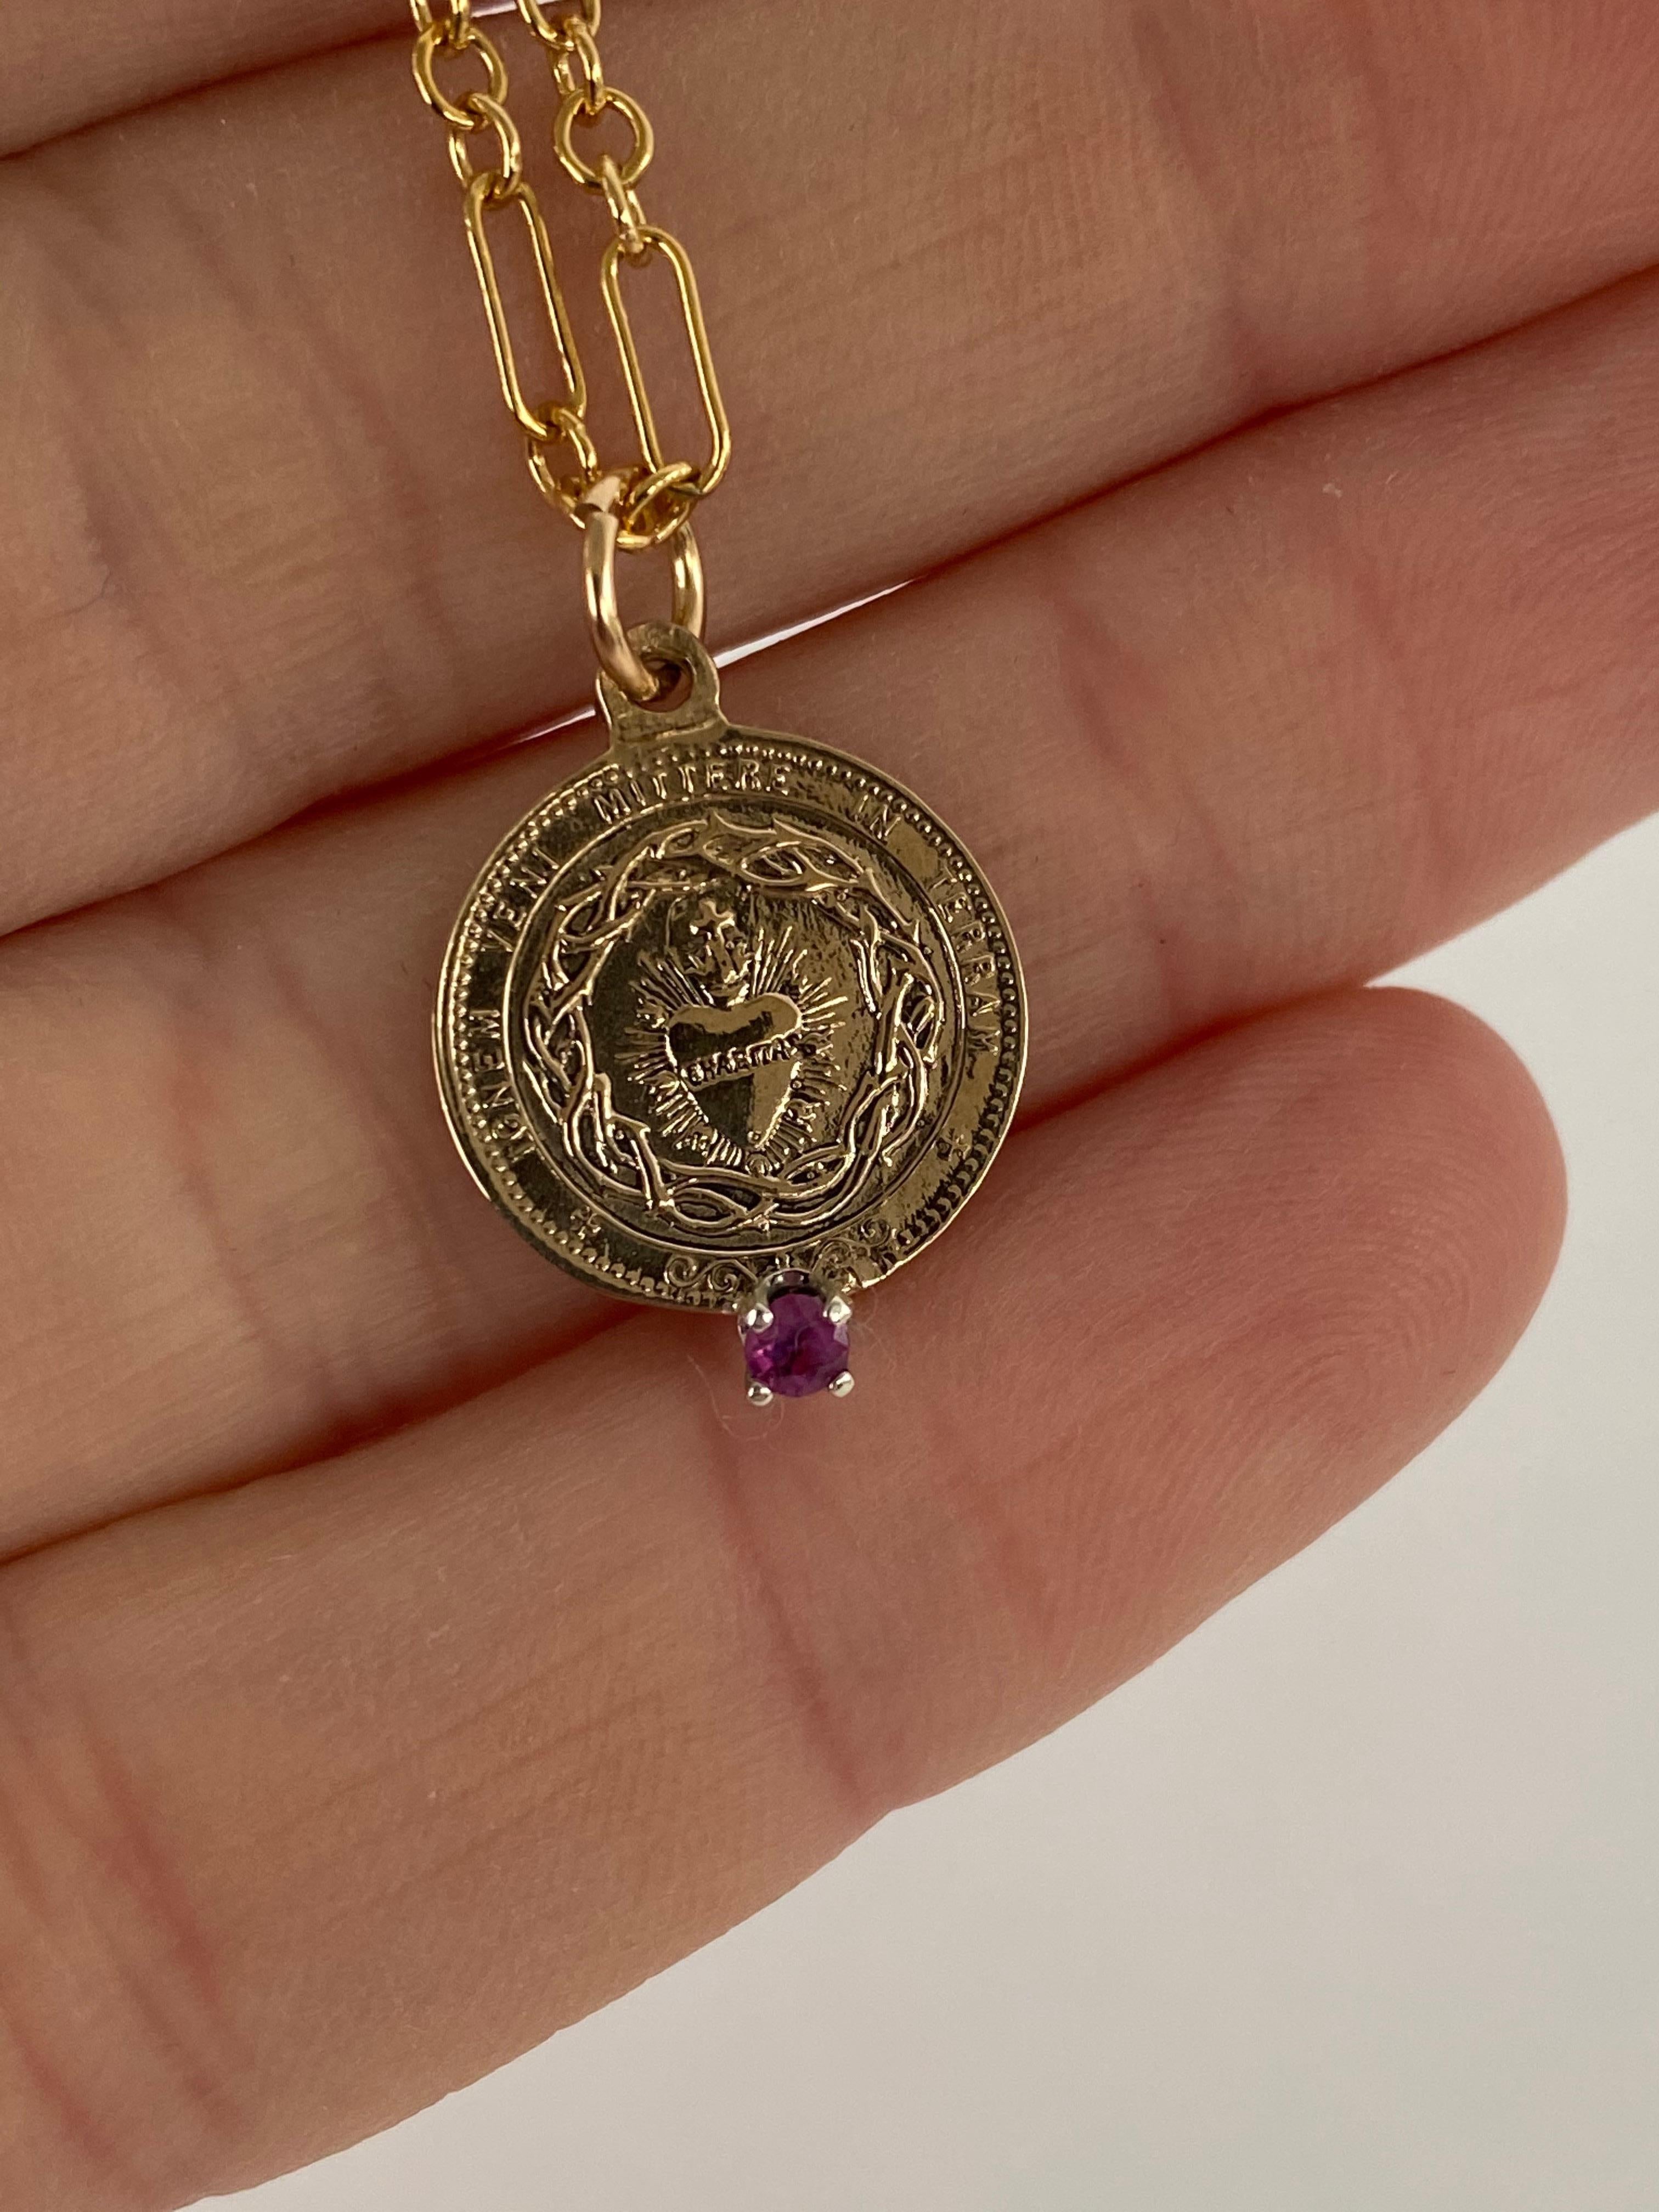 Brilliant Cut Tourmaline Sacred Heart Medal Pendant Chain Necklace Gold Vermeil J Dauphin For Sale